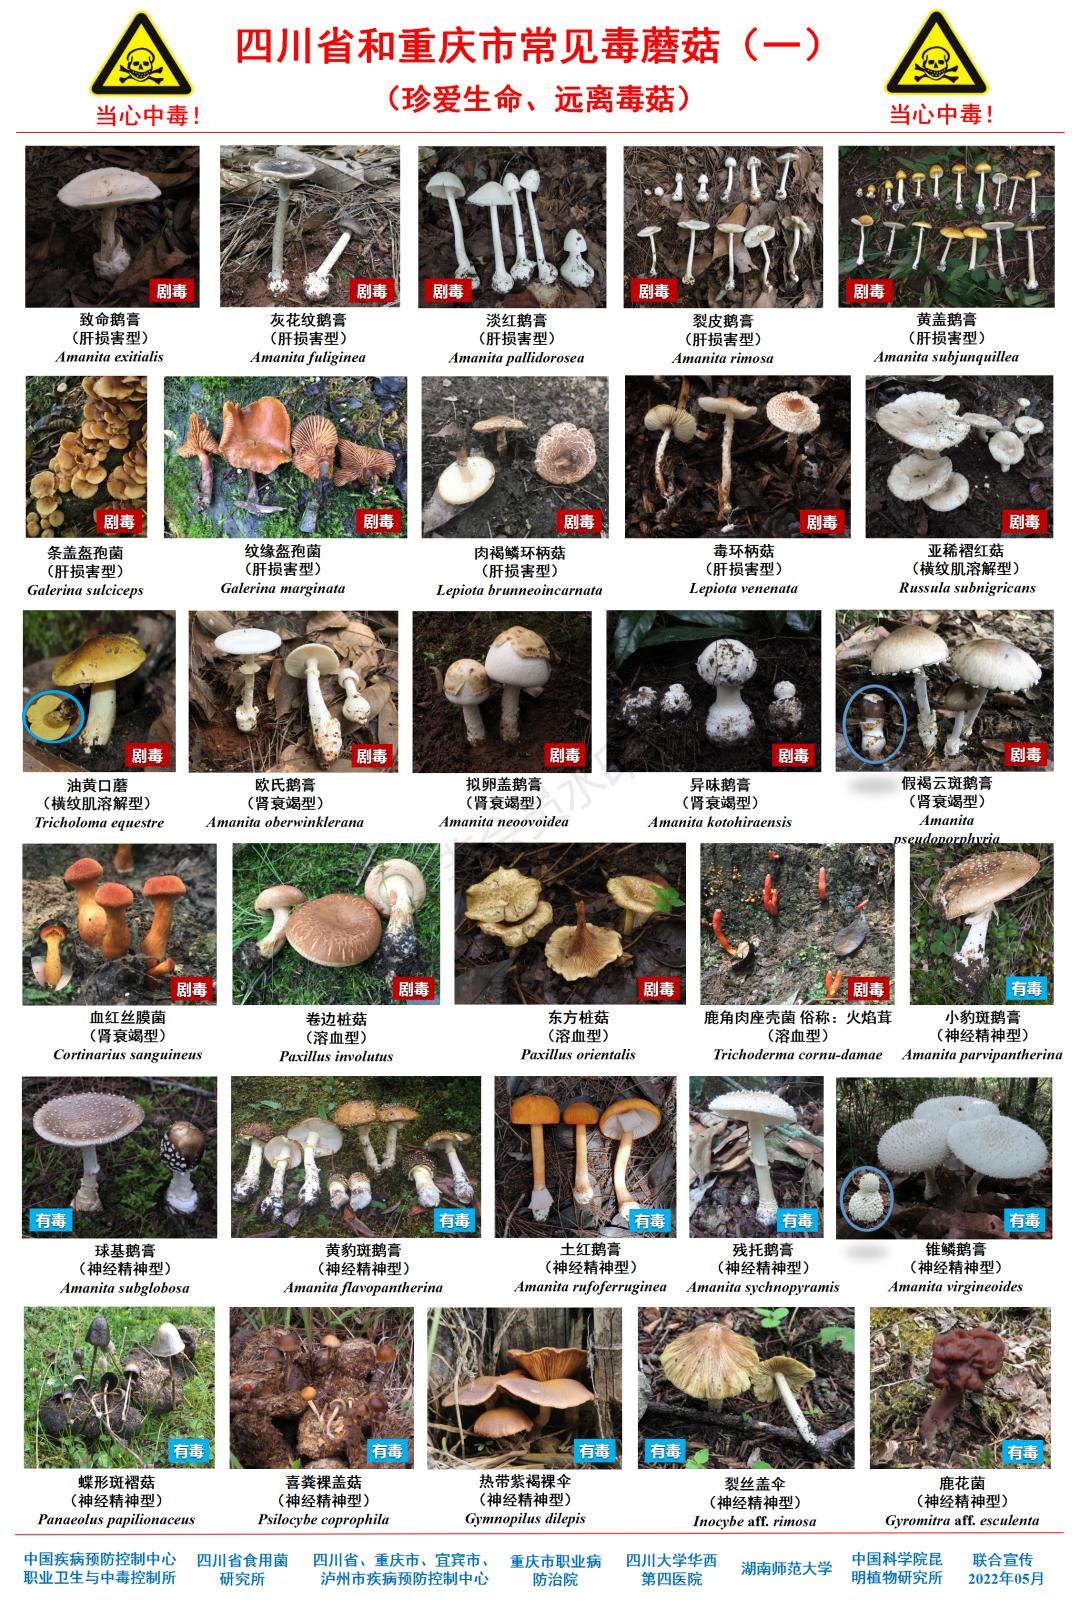 蘑菇图像识别_拍照识别蘑菇_蘑菇识别拍照软件下载